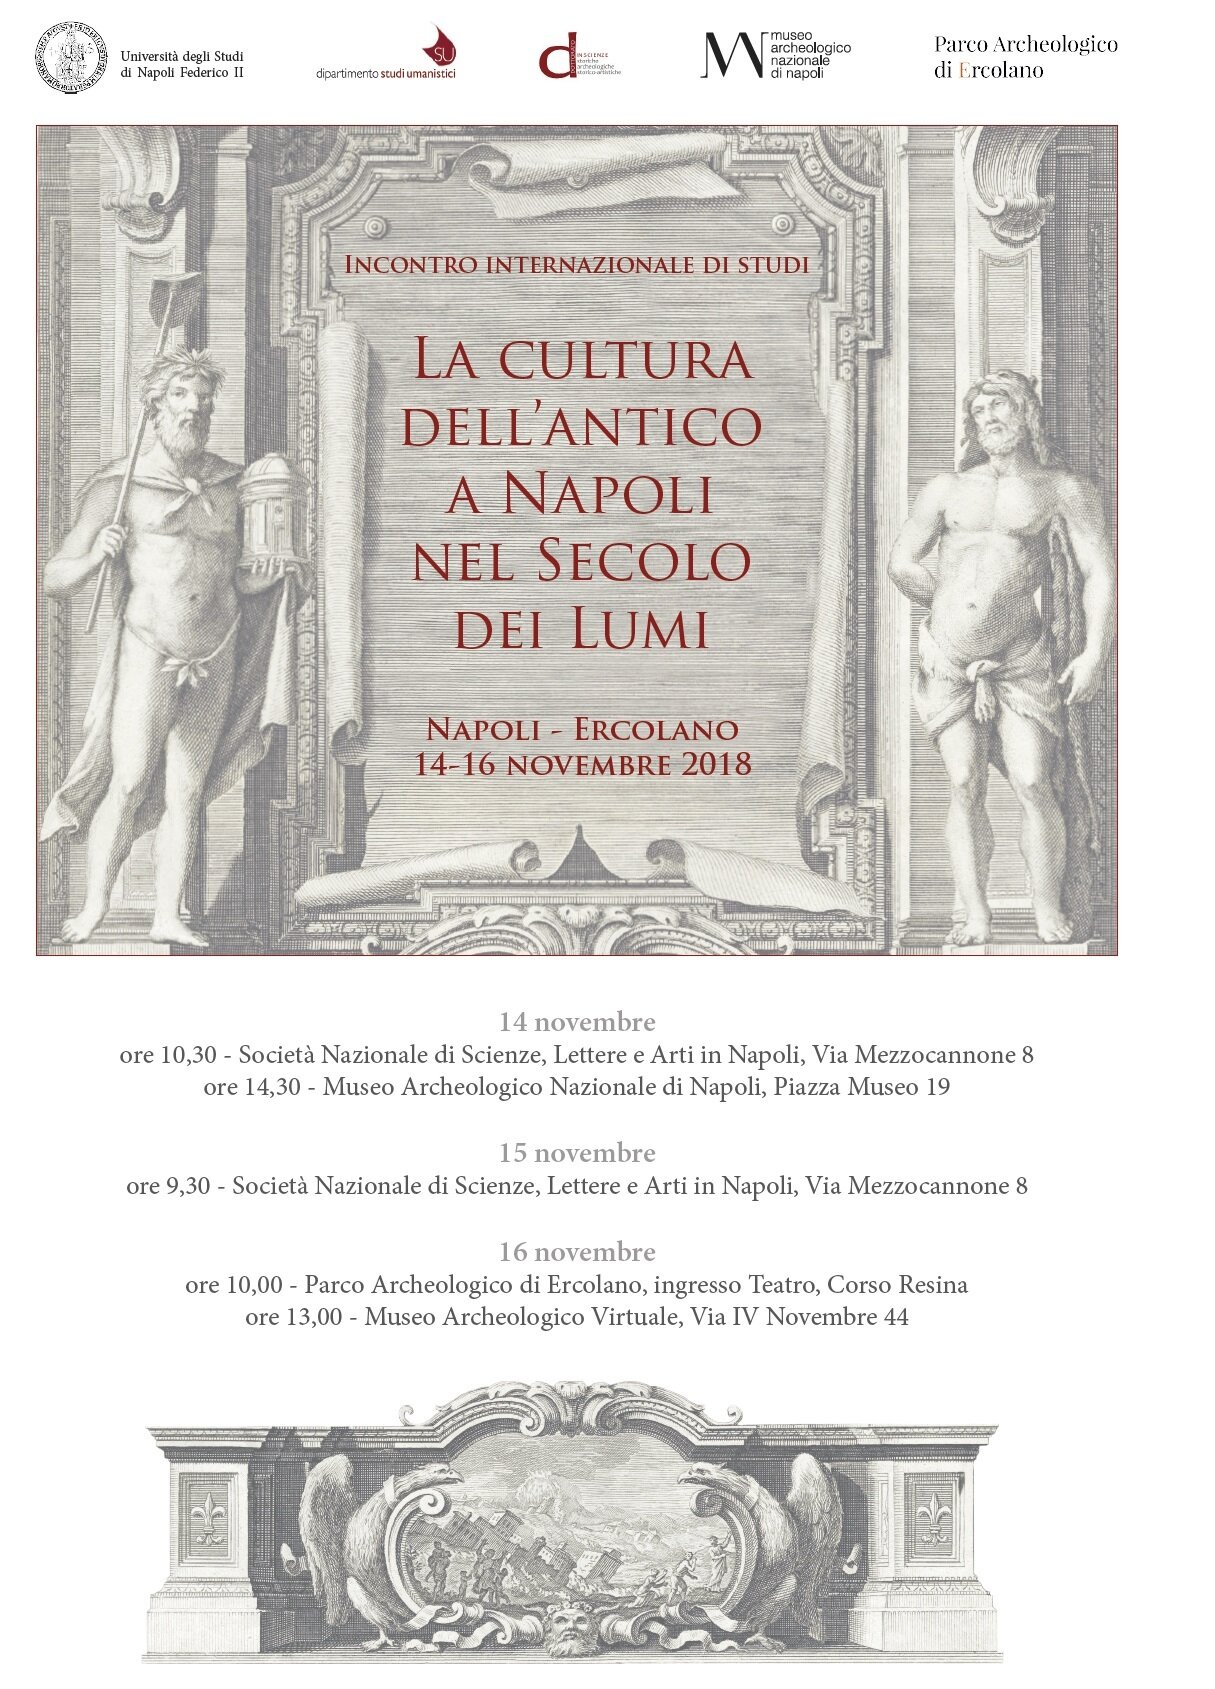 Incontro Internazionale di Studio: ‘La cultura dell’antico a Napoli nel Secolo dei Lumi’